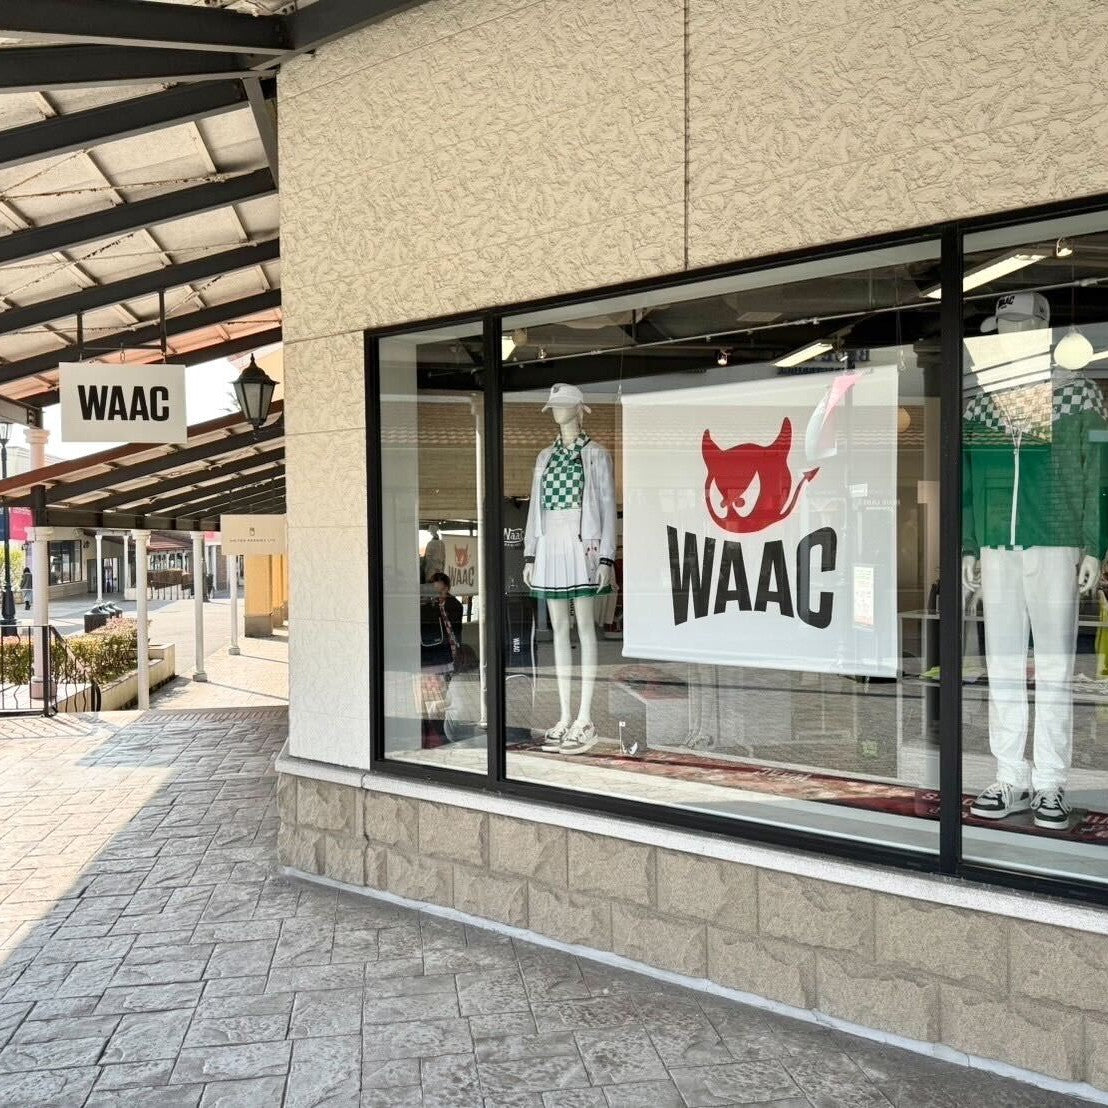 WAAC 鳥栖プレミアムアウトレット店 オープンのお知らせ